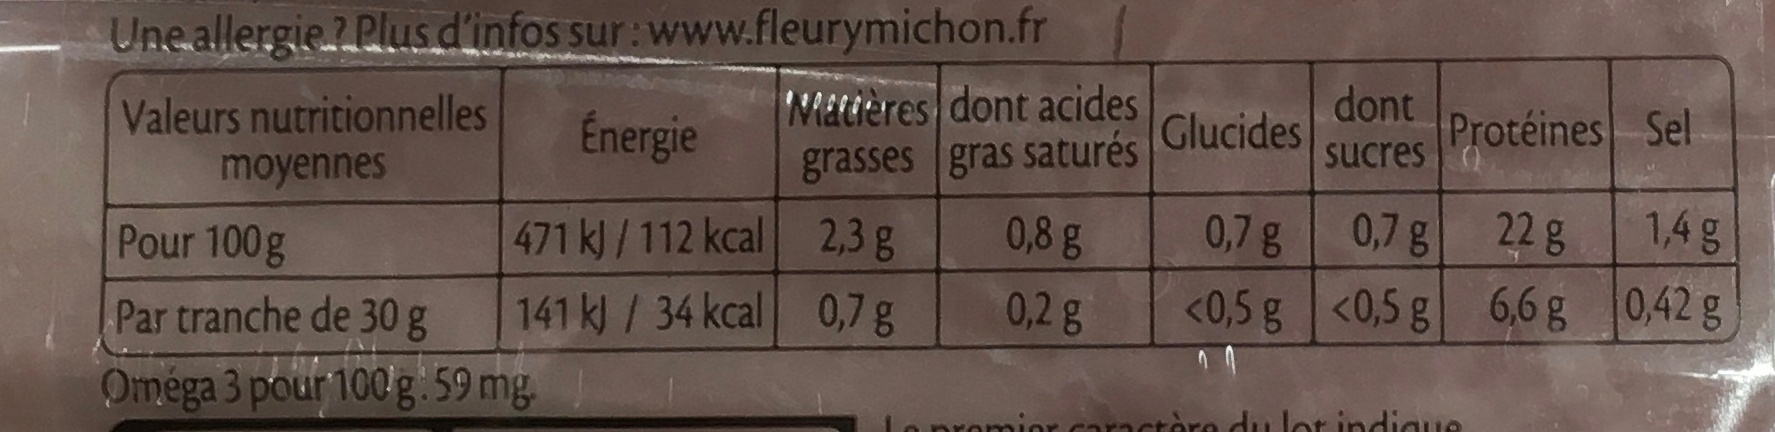 Le Supérieur -25% de Sel (lot 2x6+8 tranches) - Nutrition facts - fr